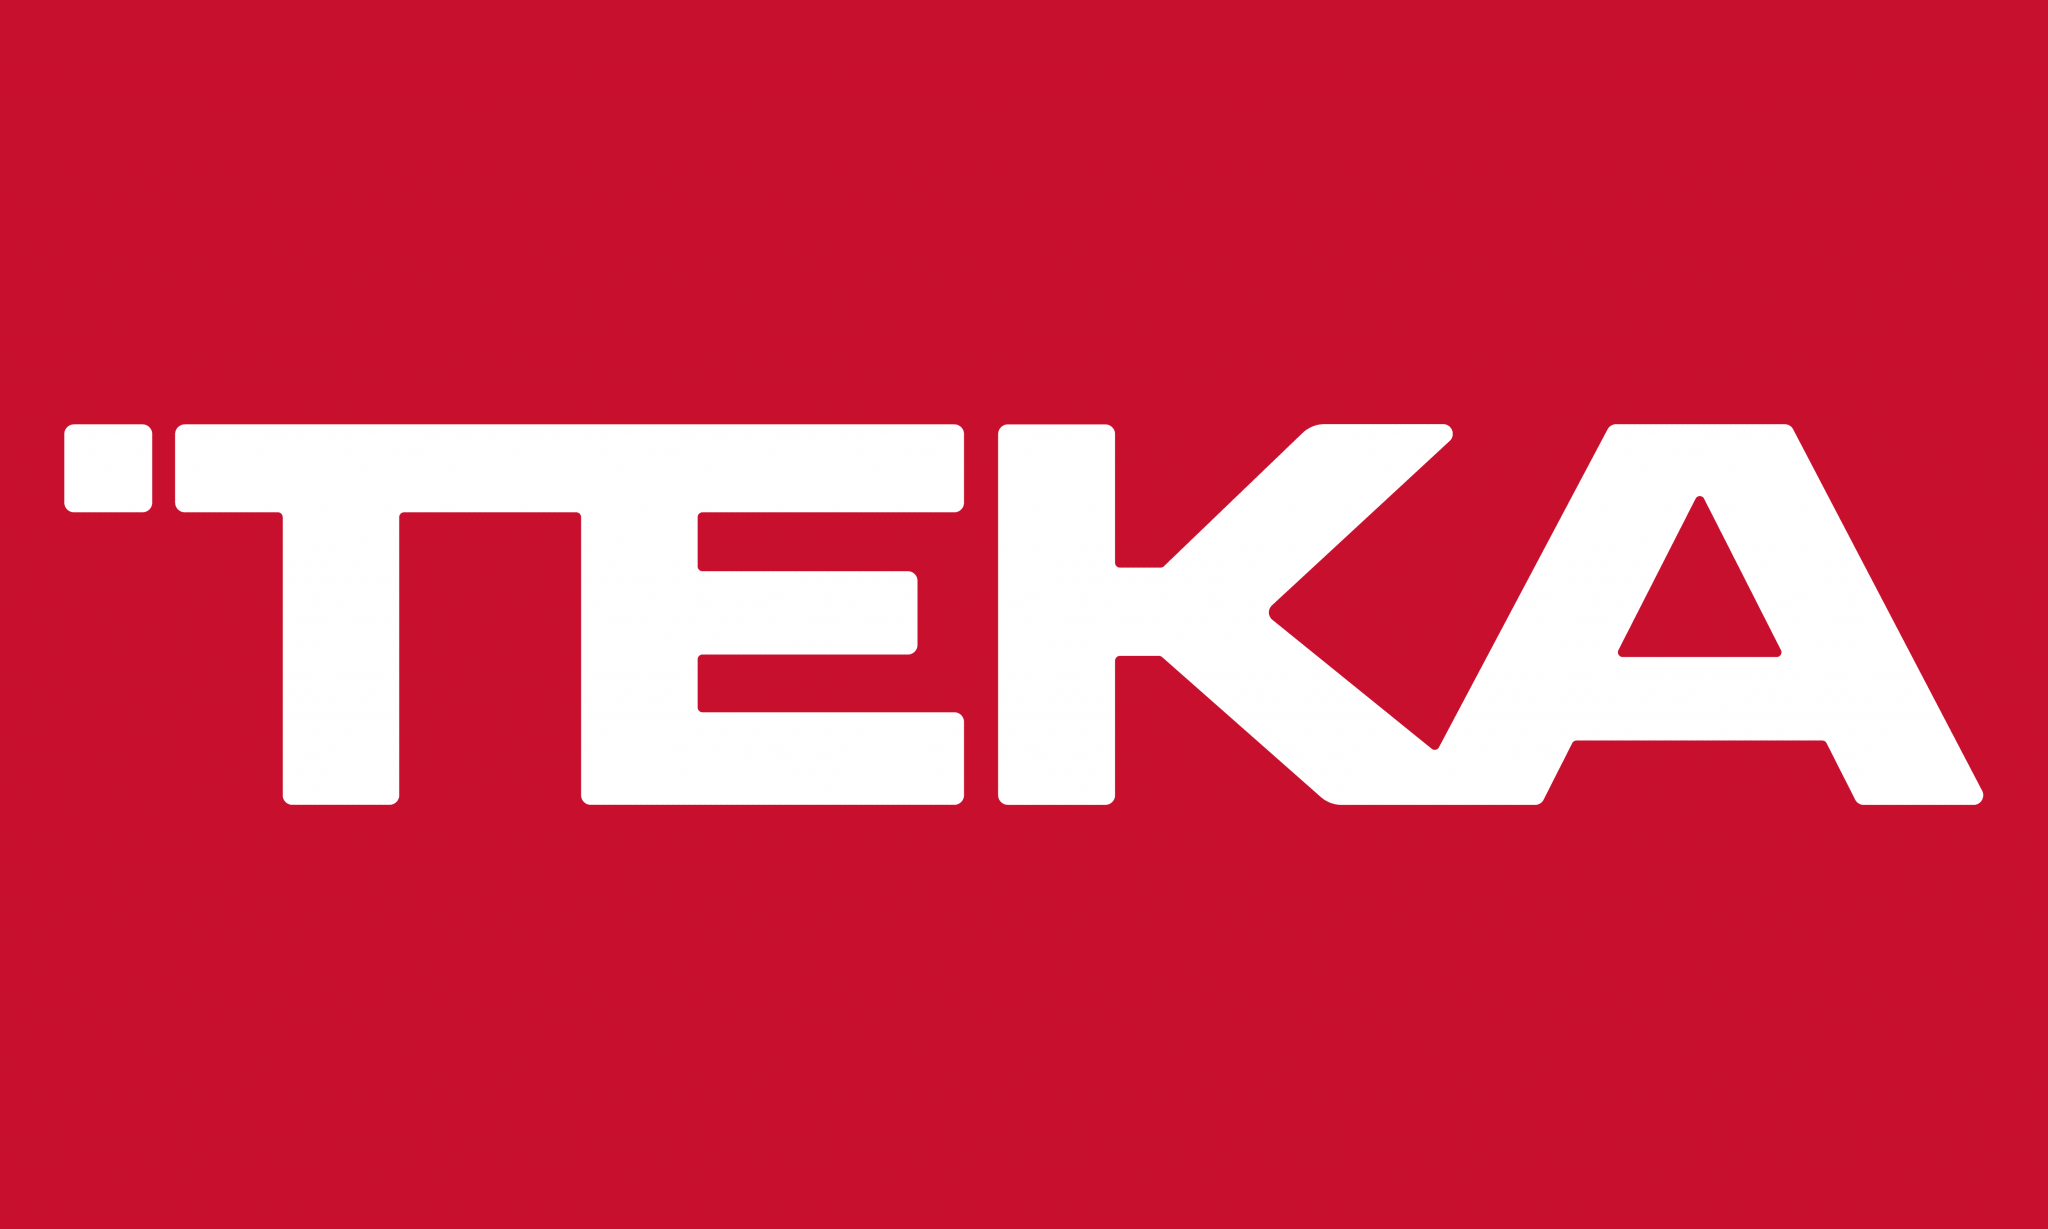 Teka Logo 2048x1229 